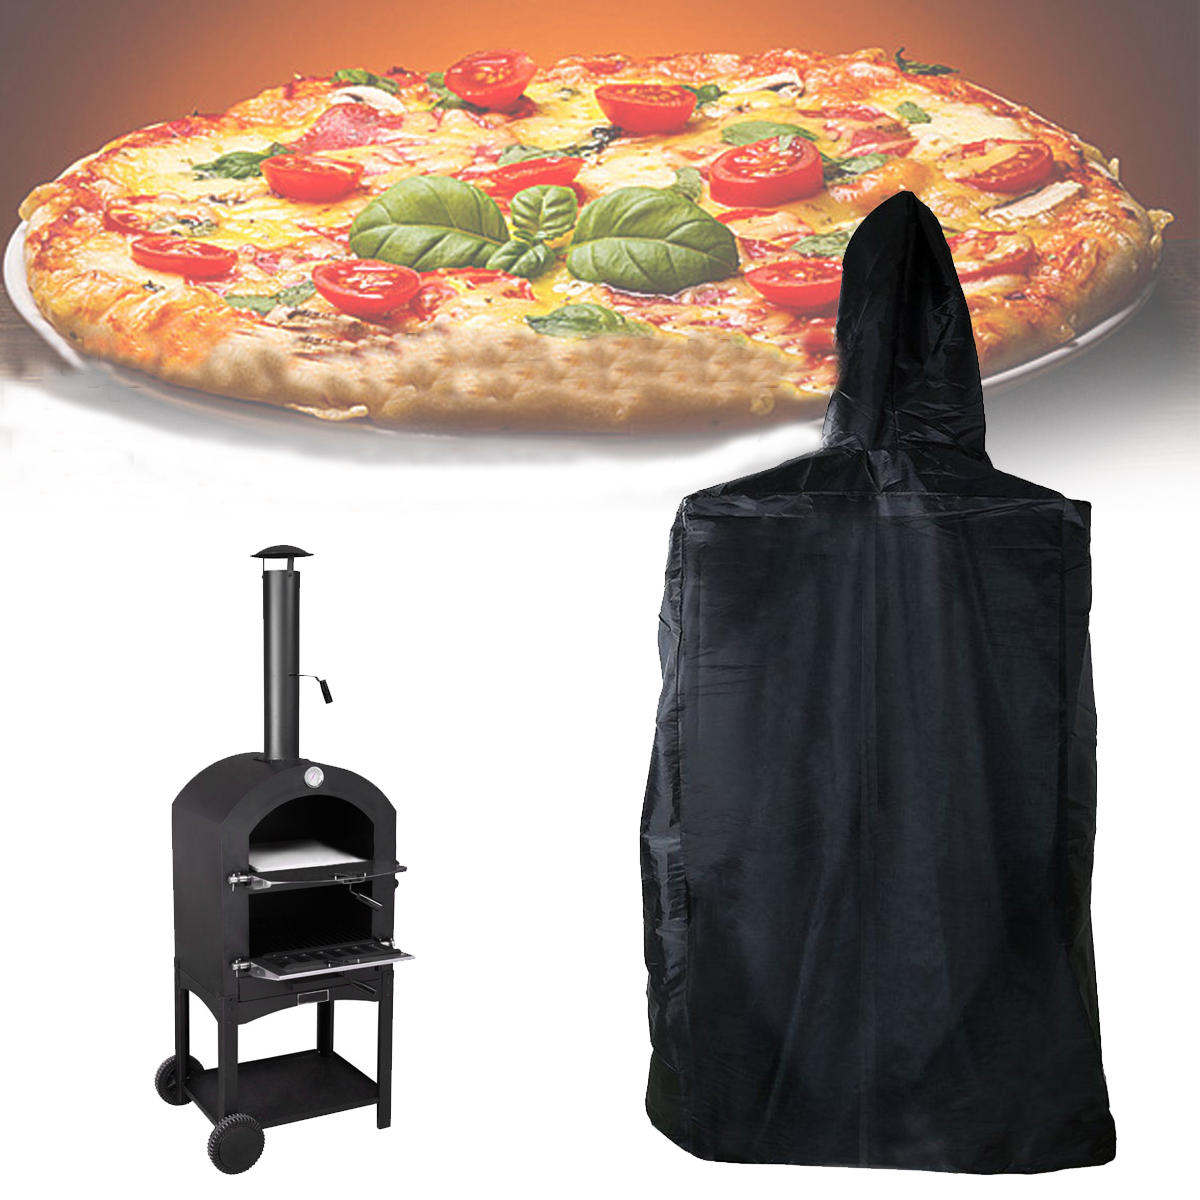 Cubierta para horno de pizza exterior de 160x37x50cm, resistente al agua, al polvo y a los rayos UV.